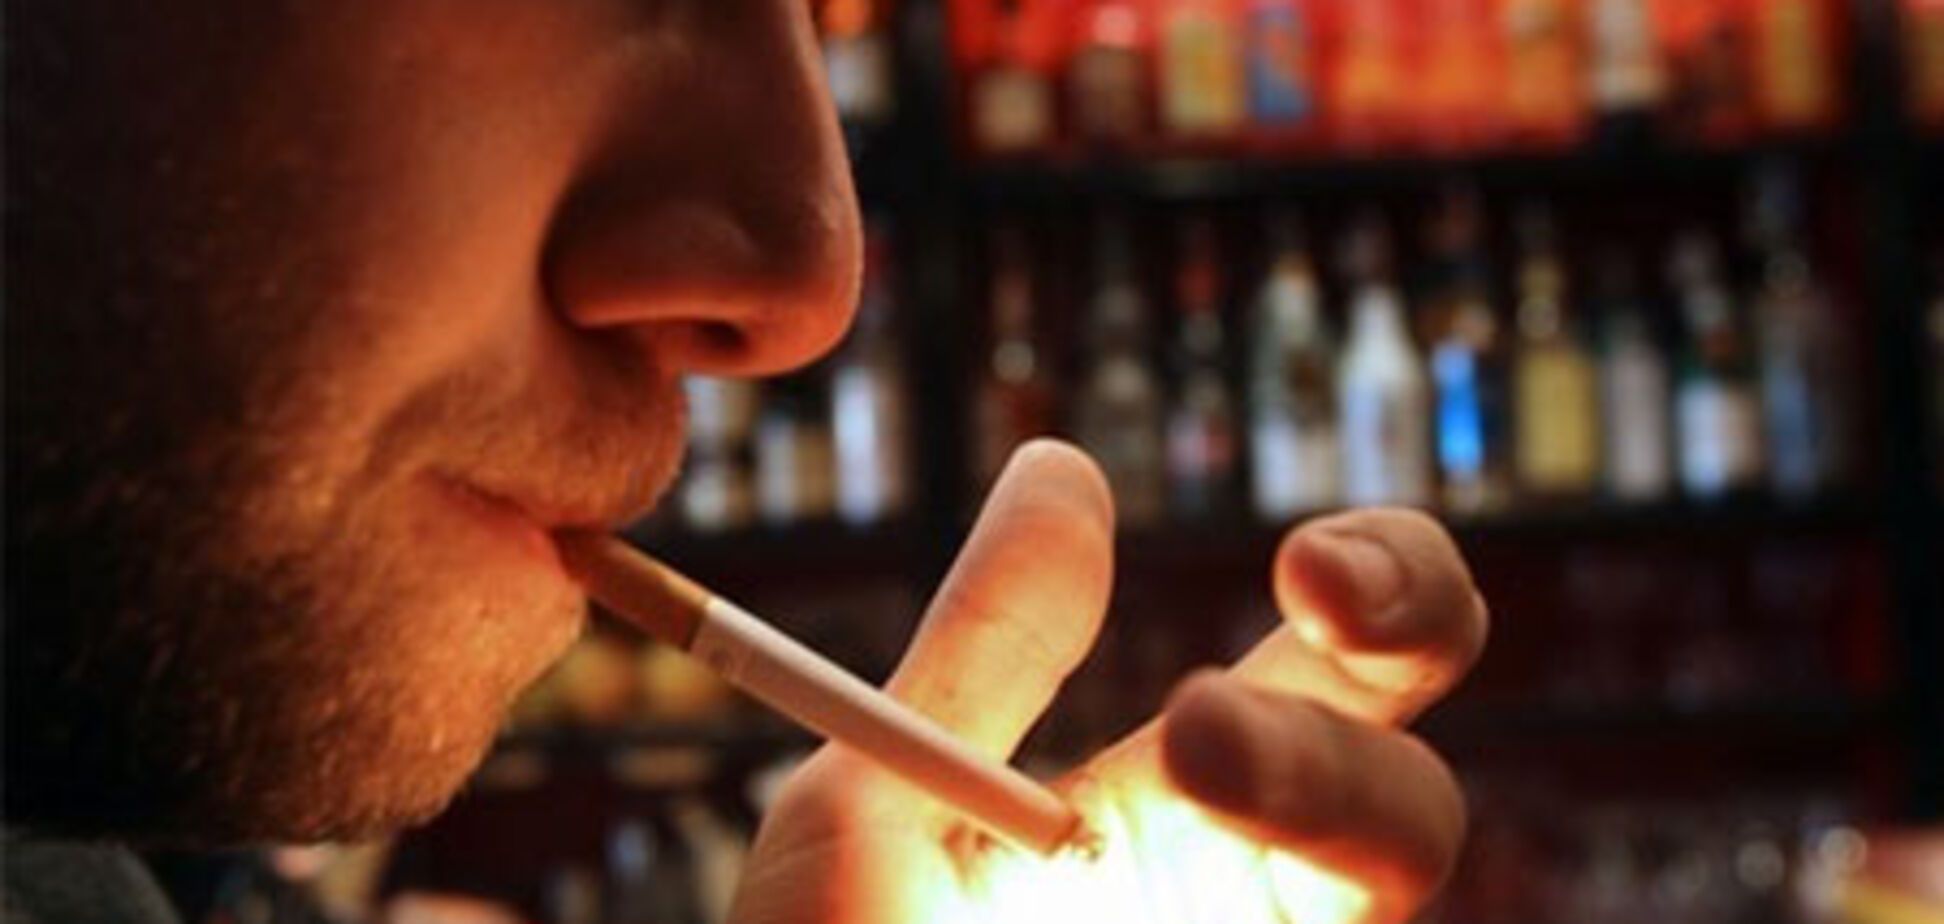 Британцы научились обходить запрет на курение в барах